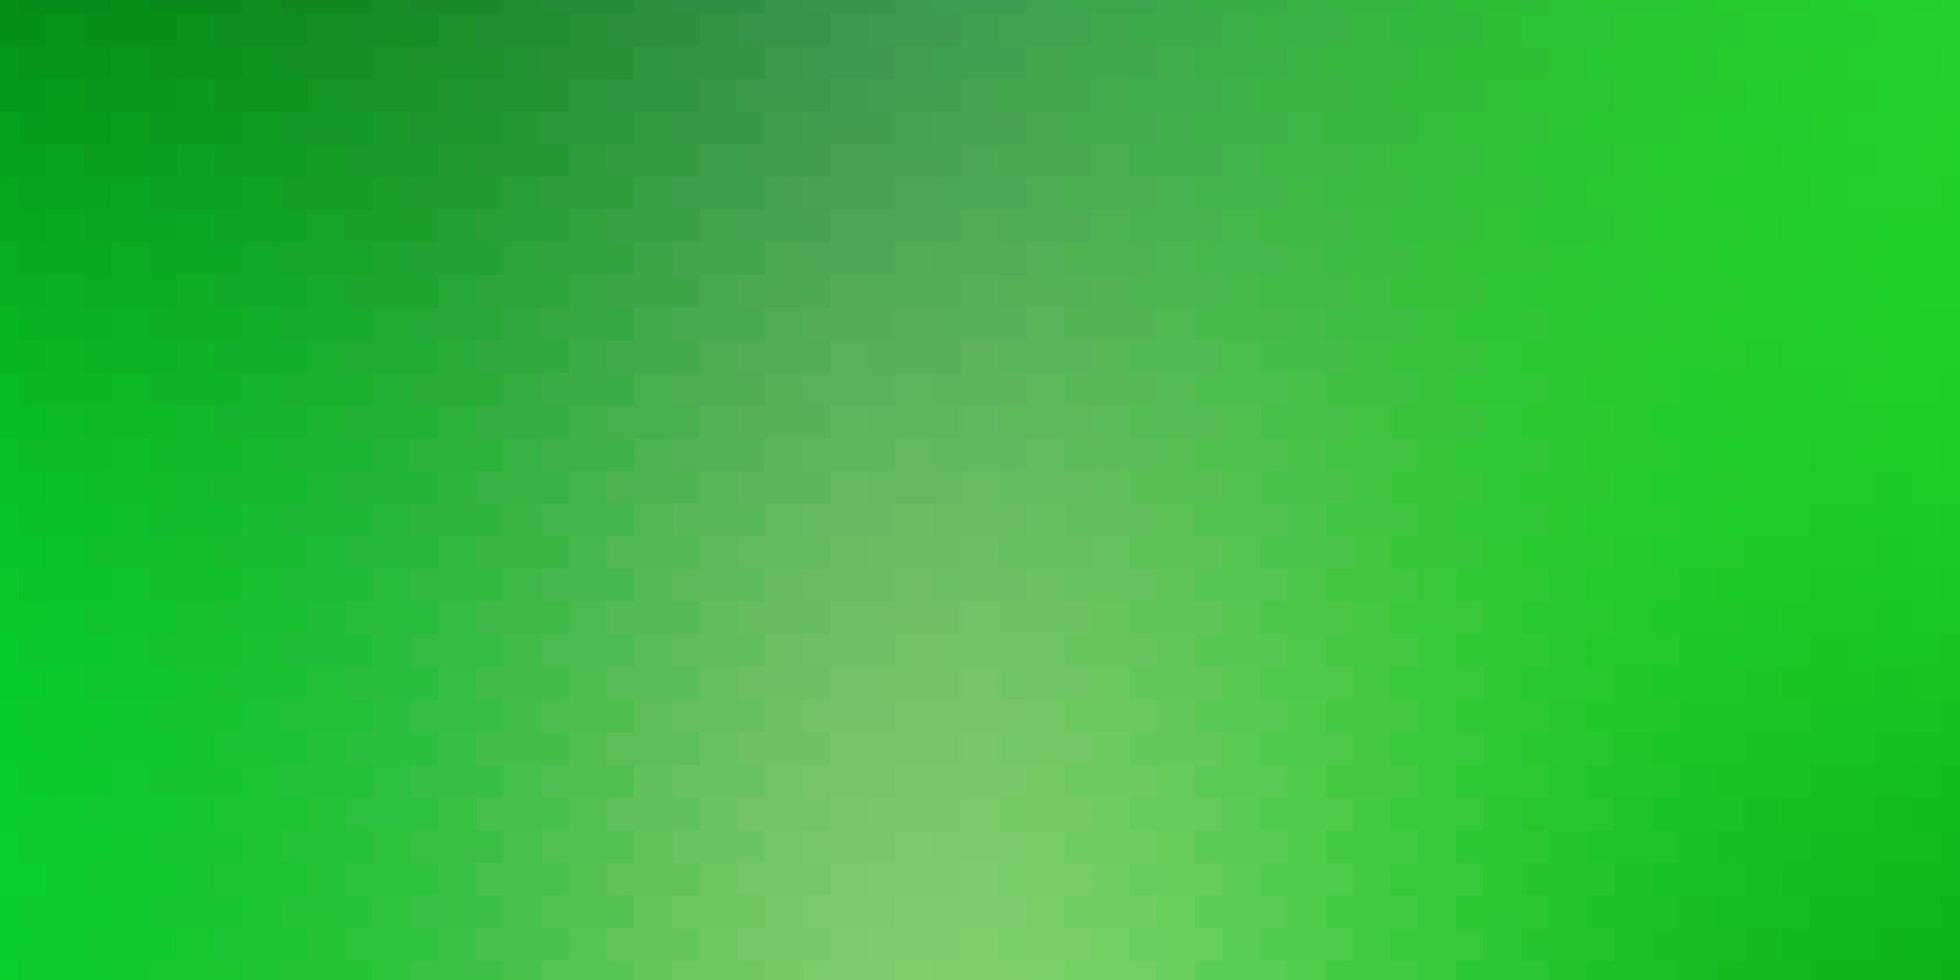 hellgrüner Vektorhintergrund mit Rechtecken. vektor